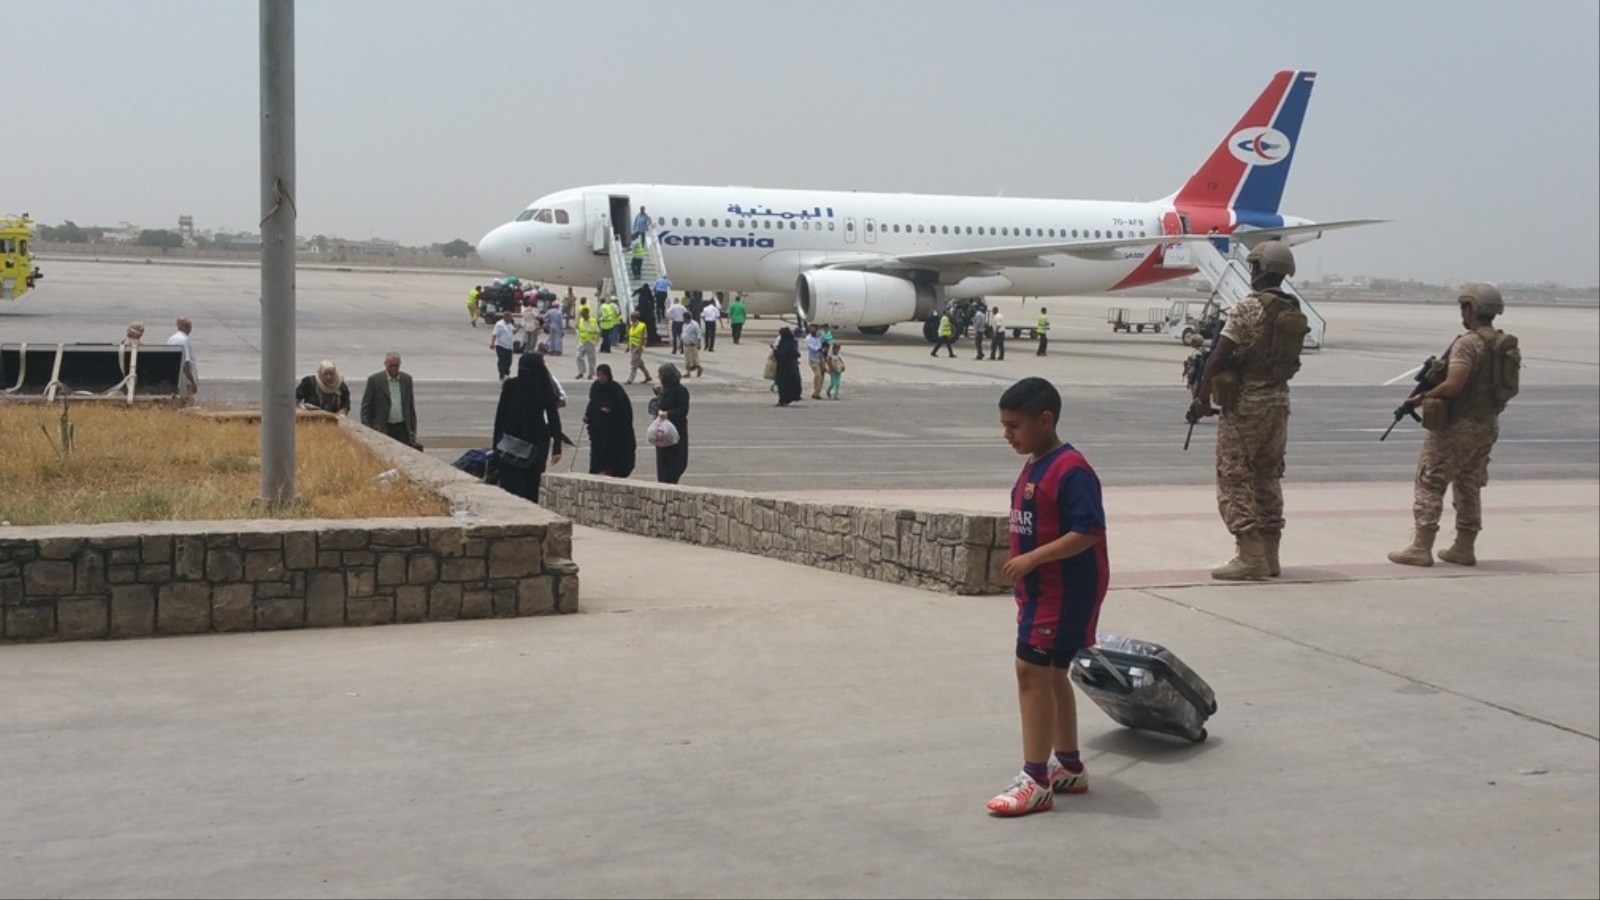 ‪أكثر  من 500 لاجئ يمني عادوا إلى عدن بعد تحريرها من سيطرة الحوثيين (الجزيرة نت)‬ أكثر  من 500 لاجئ يمني عادوا إلى عدن بعد تحريرها من سيطرة الحوثيين (الجزيرة نت)